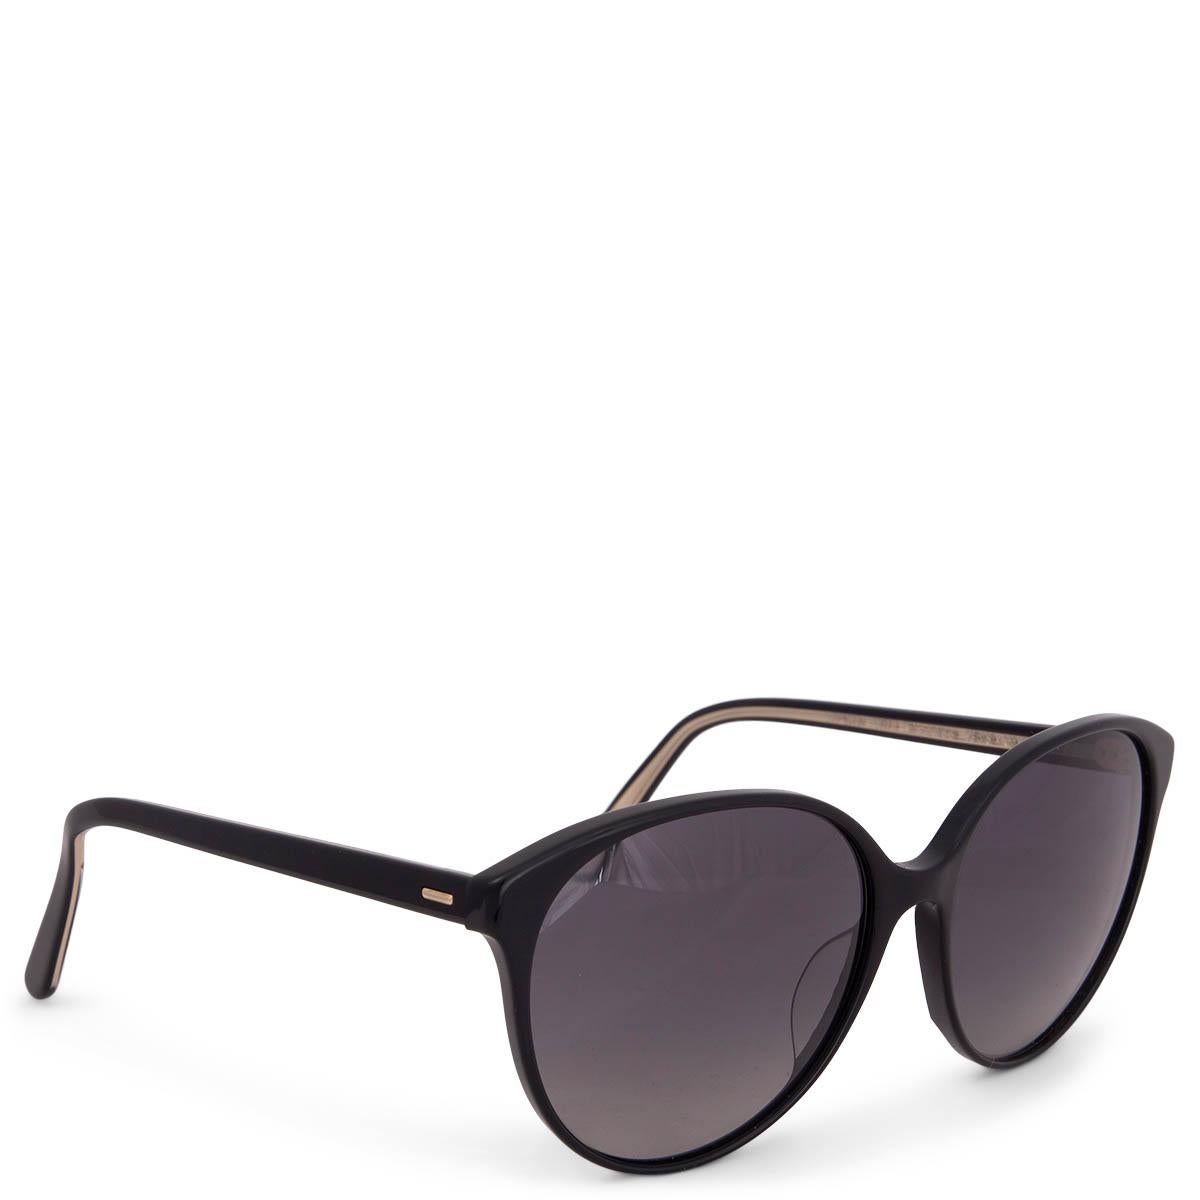 100% authentiques lunettes de soleil rondes oversize Oliver Peoples x The Row Brooktree en acétate noir et verres dégradés gris. Ils ont été portés et sont en excellent état. Livré avec étui. 

Mesures
Modèle	OV5425SU
Largeur	14cm